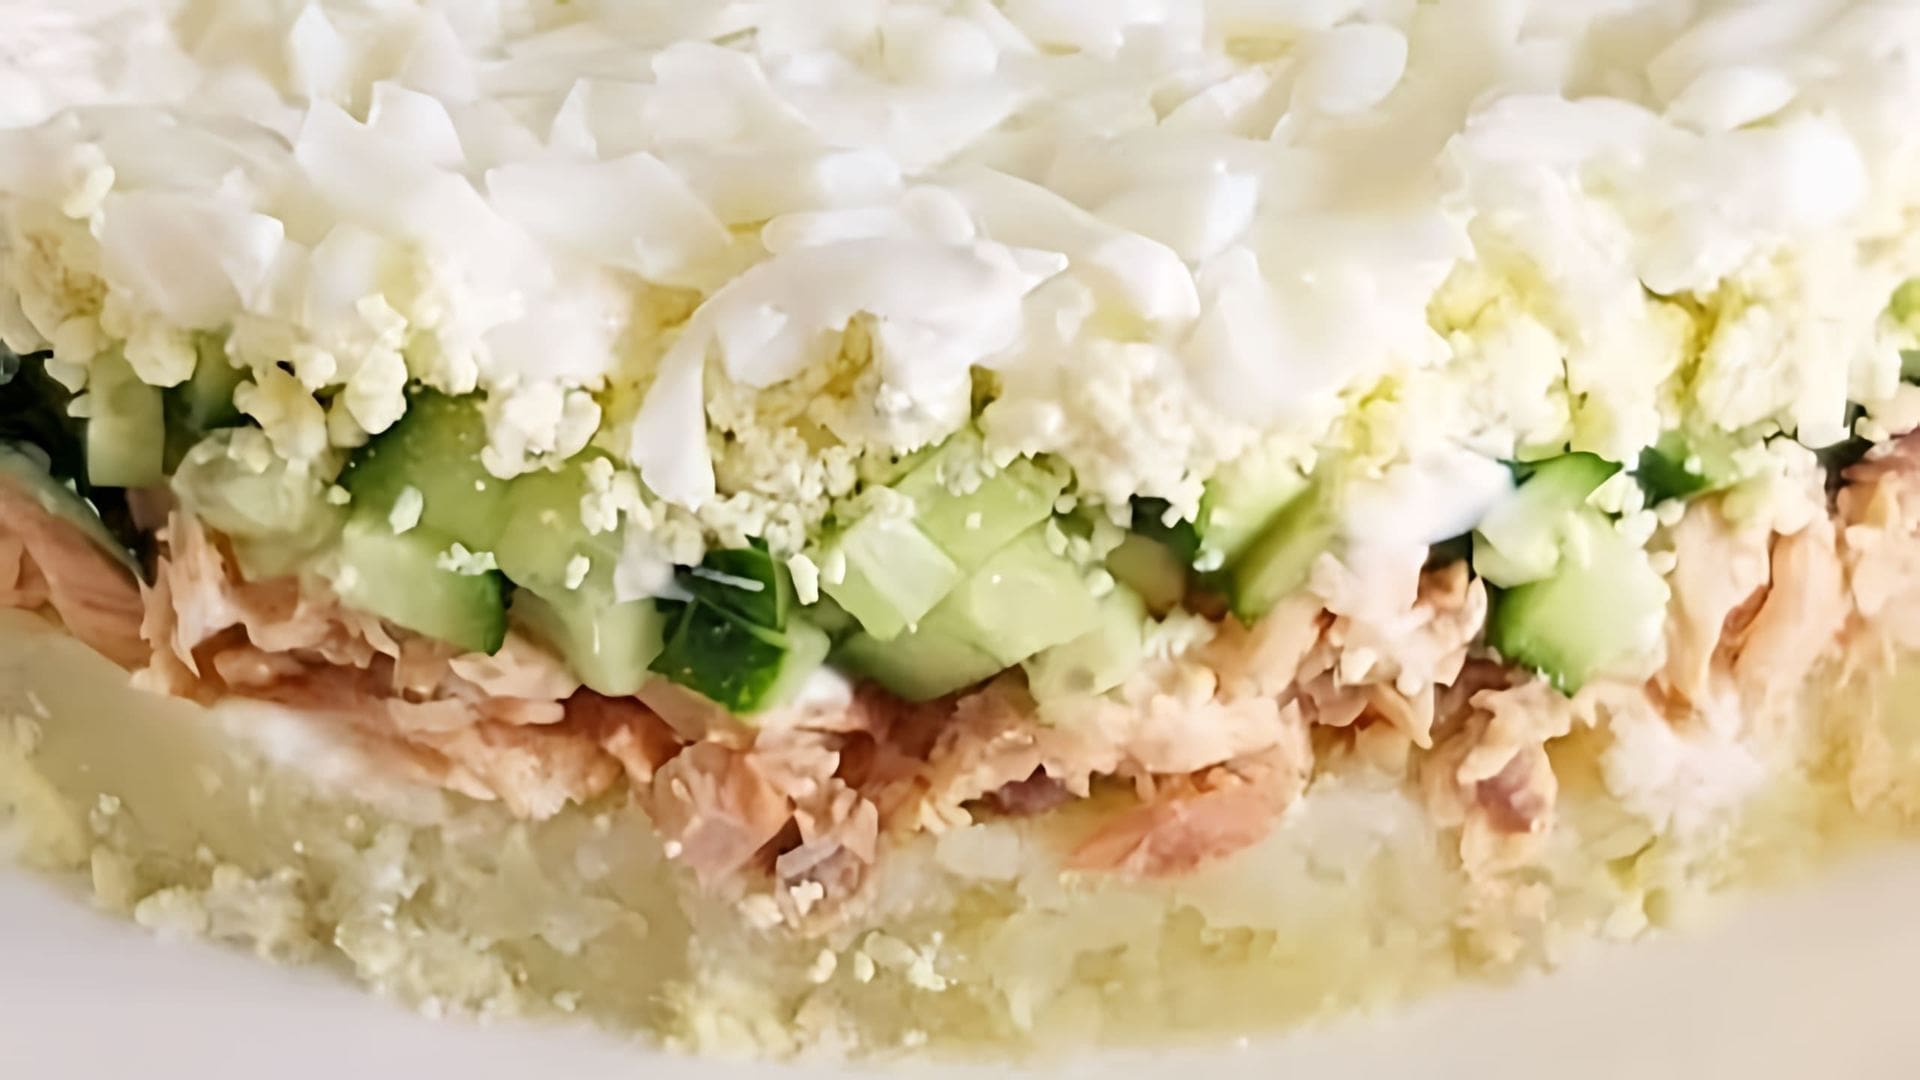 Слоёный салат с рыбными консервами - это вкусное и питательное блюдо, которое можно приготовить на любой праздник или семейный ужин